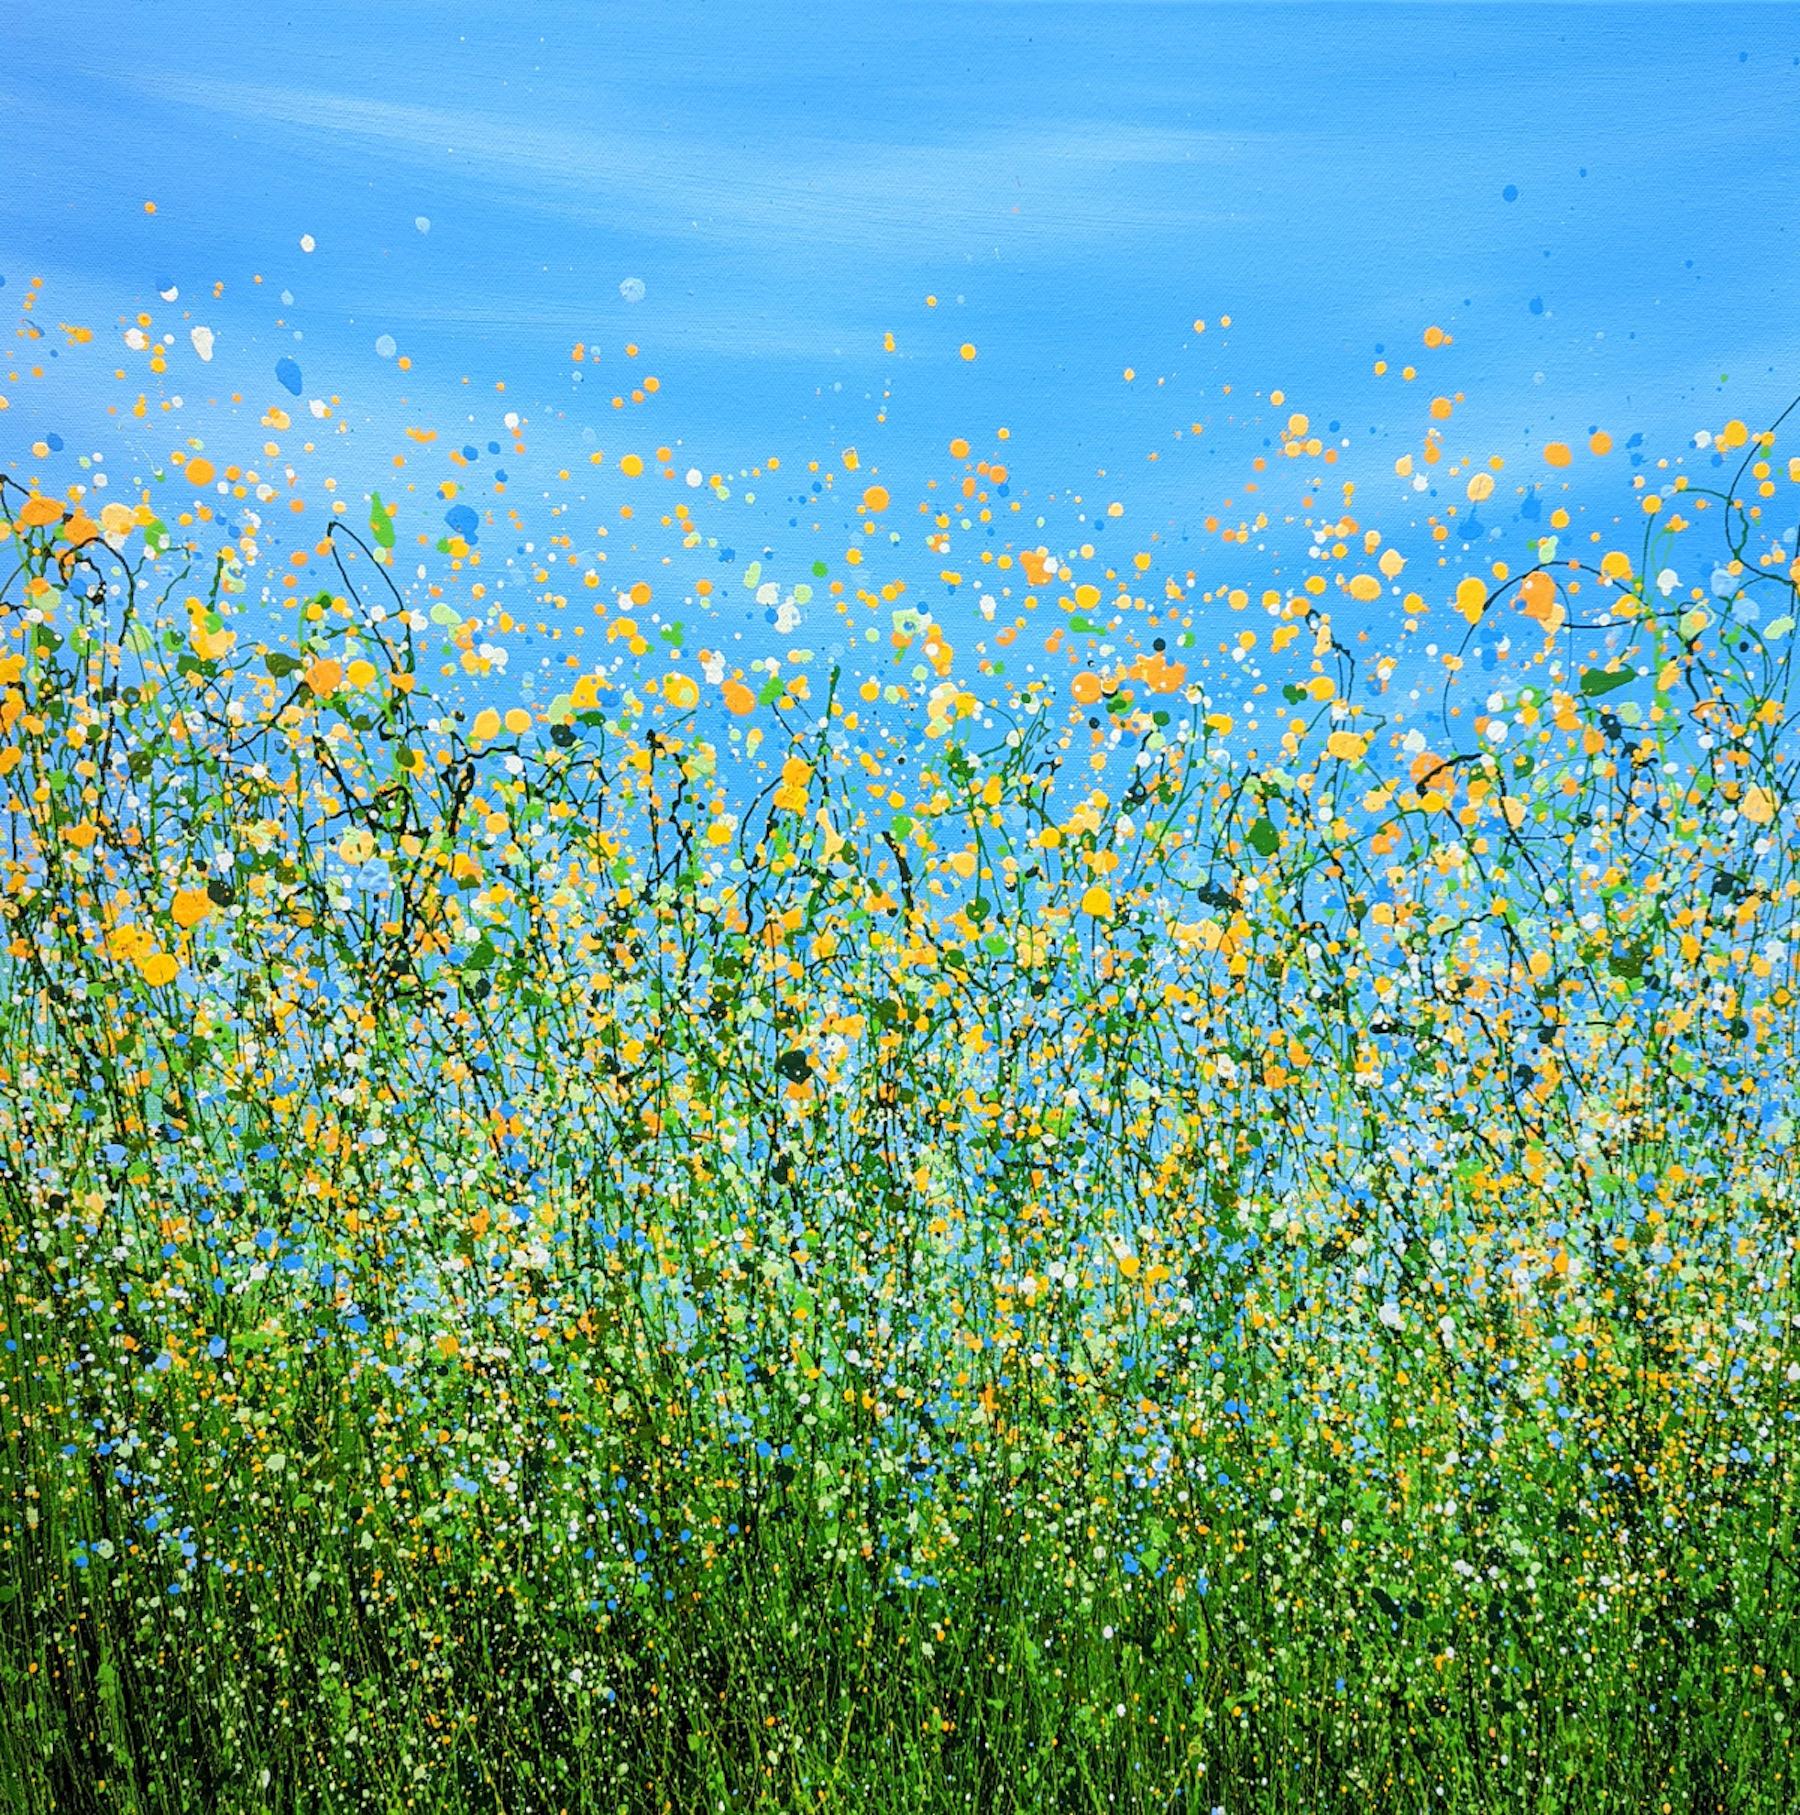 Landscape Painting Lucy Moore - Peinture de paysage expressionniste abstraite Sunny Side Up n° 3, peinture de moine